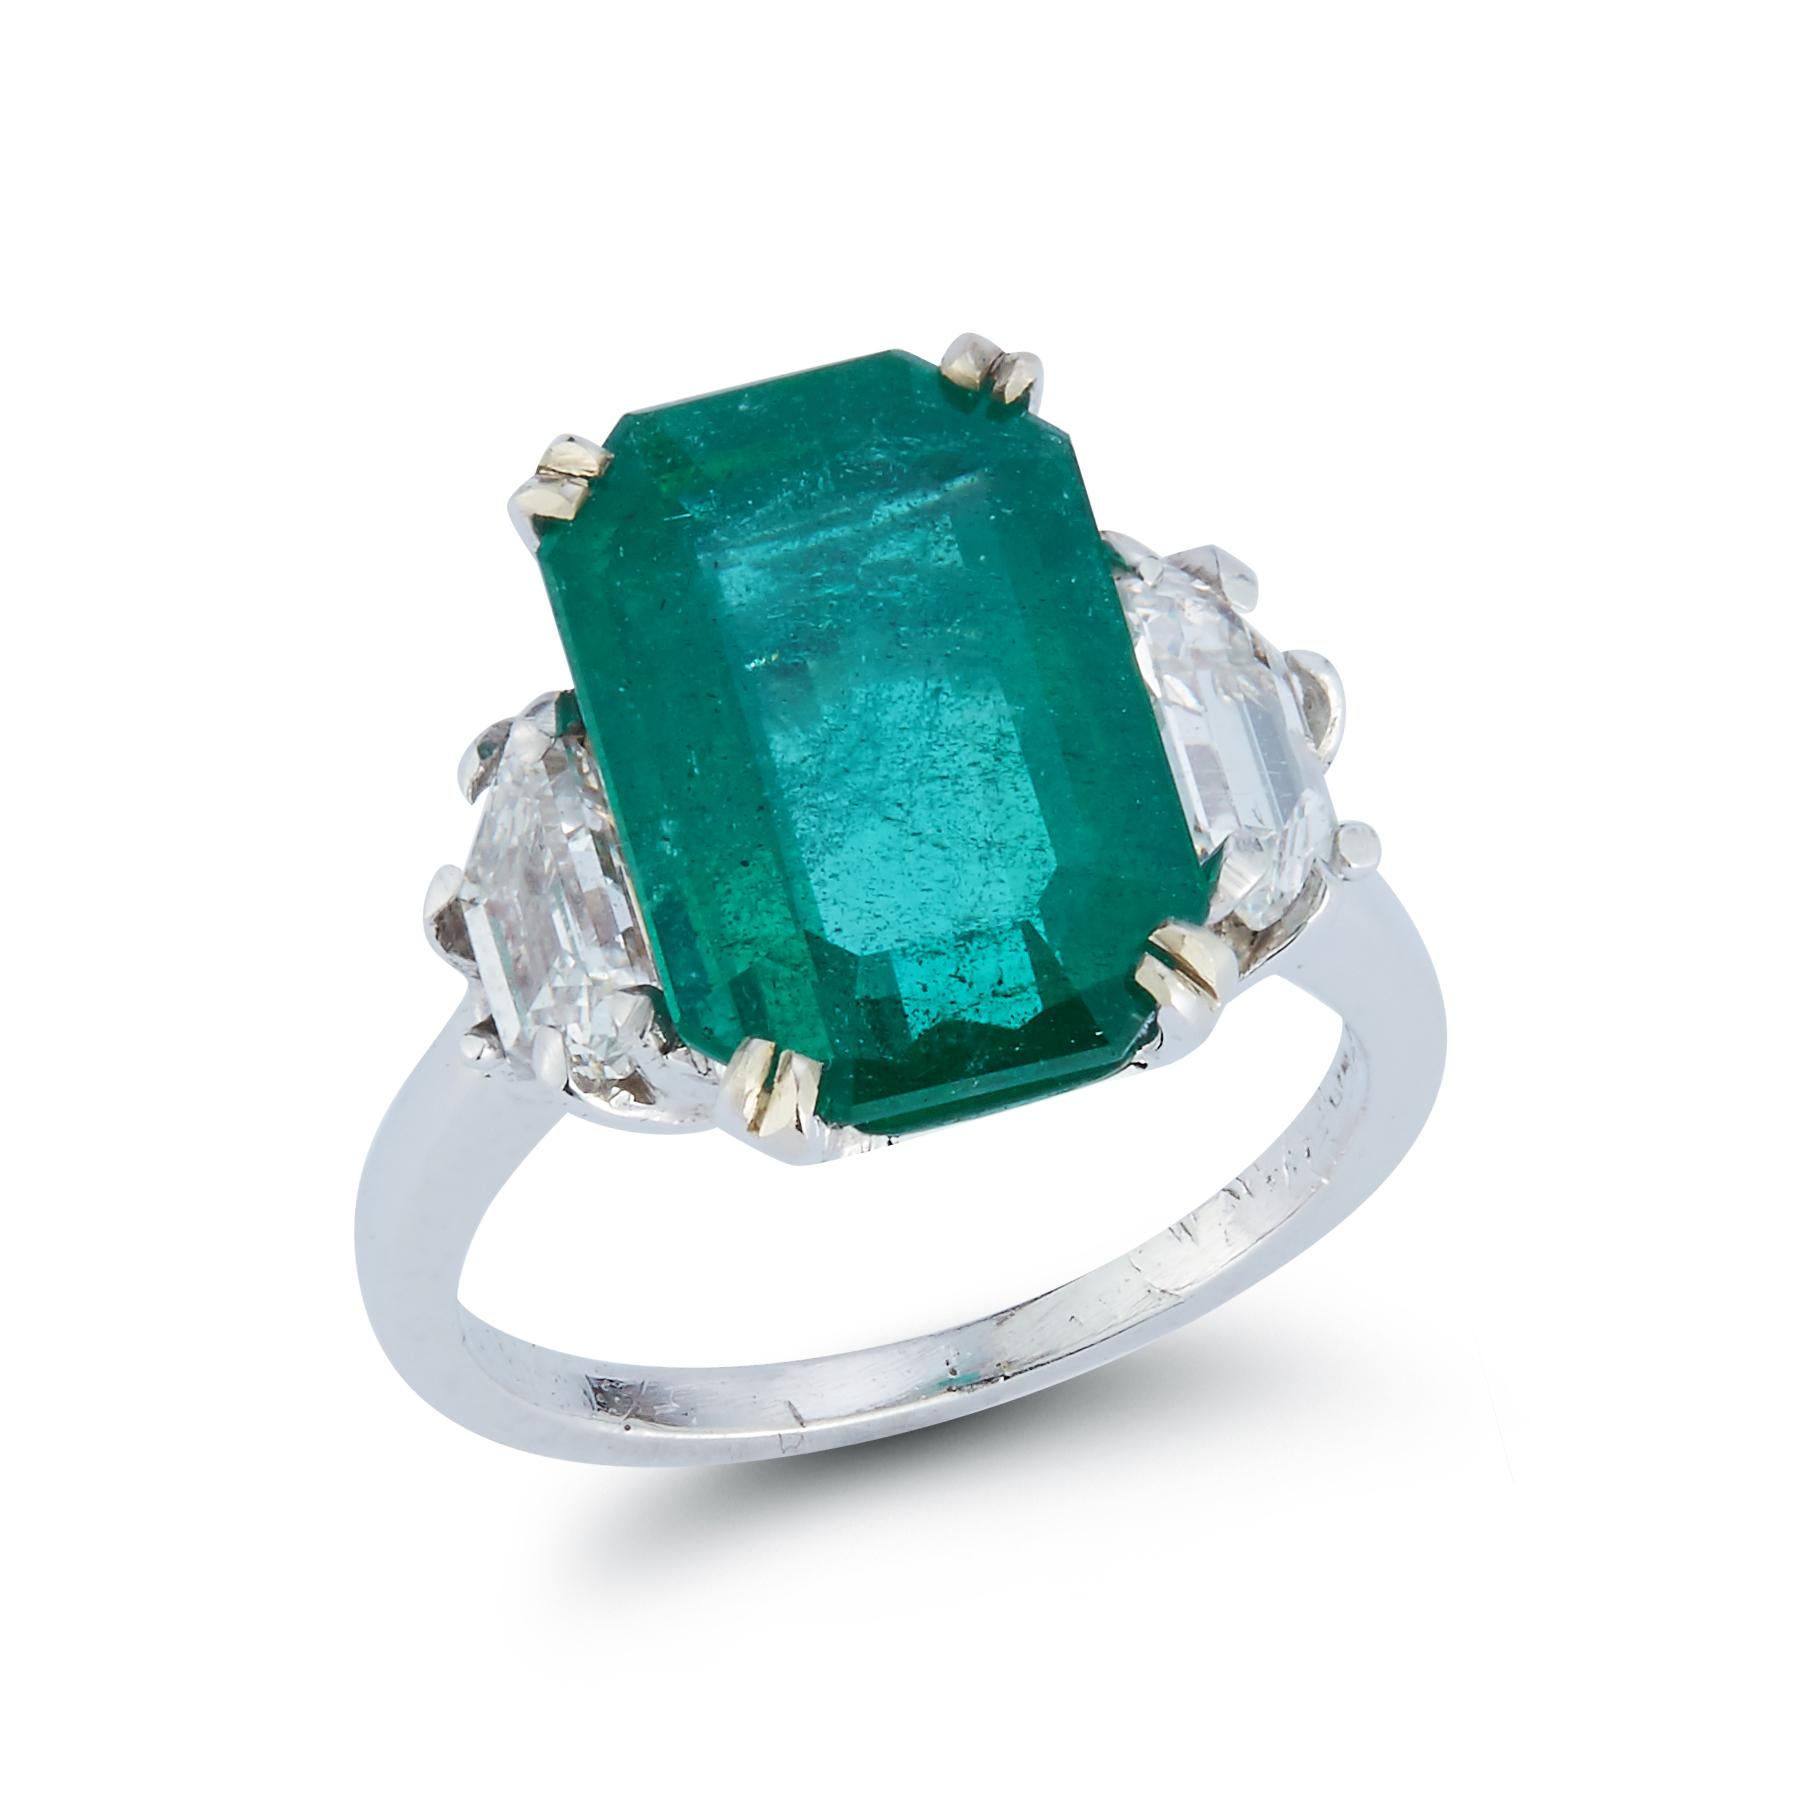 Smaragd & Diamant Drei Stein Cocktail Ring 

GIA-zertifiziert 

Achteckige Form Step-Cut Smaragd etwa 4,15 cts mit 2 Trapezoid Step-Cut Diamanten etwa .9 cts

Ring Größe 3.75

Kostenfrei anpassbar

Gold-Typ: Platin
